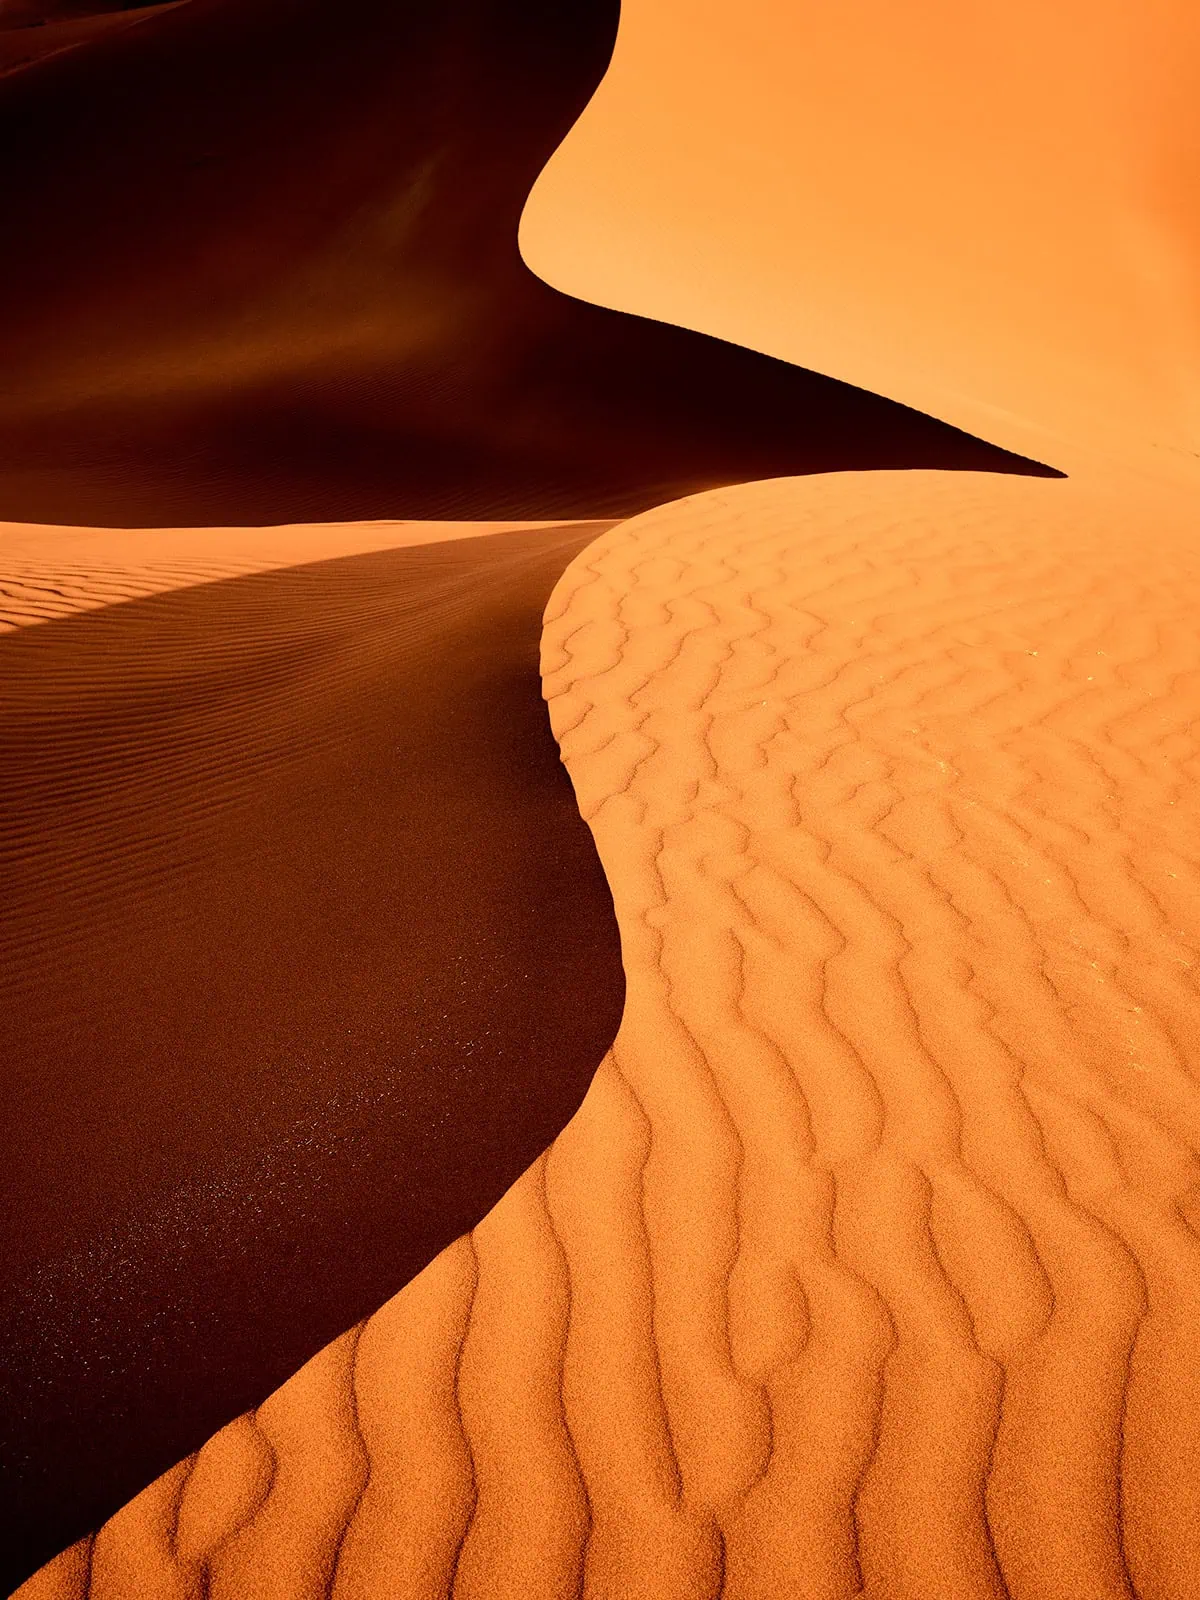 "Desert Bird" Luftbild einer orangen Sanddünen, wunderbares Schattenspiel in allen Orangetönen